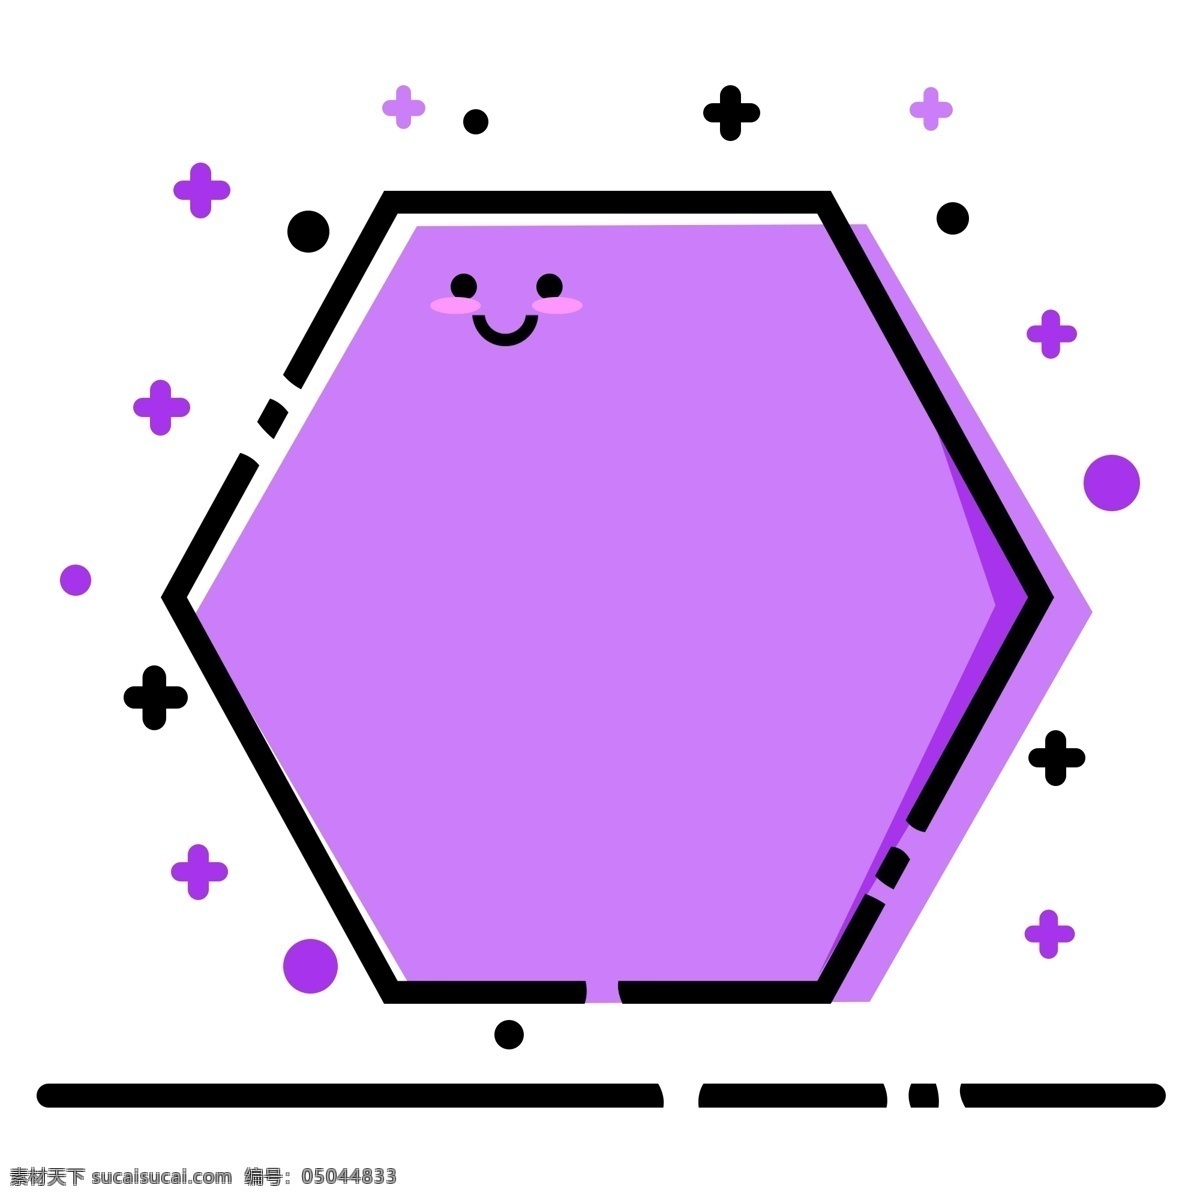 六边形 紫色 meb 风格 纹理 边框 商用 六边形边框 紫色边框 纹理边框 装饰素材 简约 可商用 meb风格 风格化